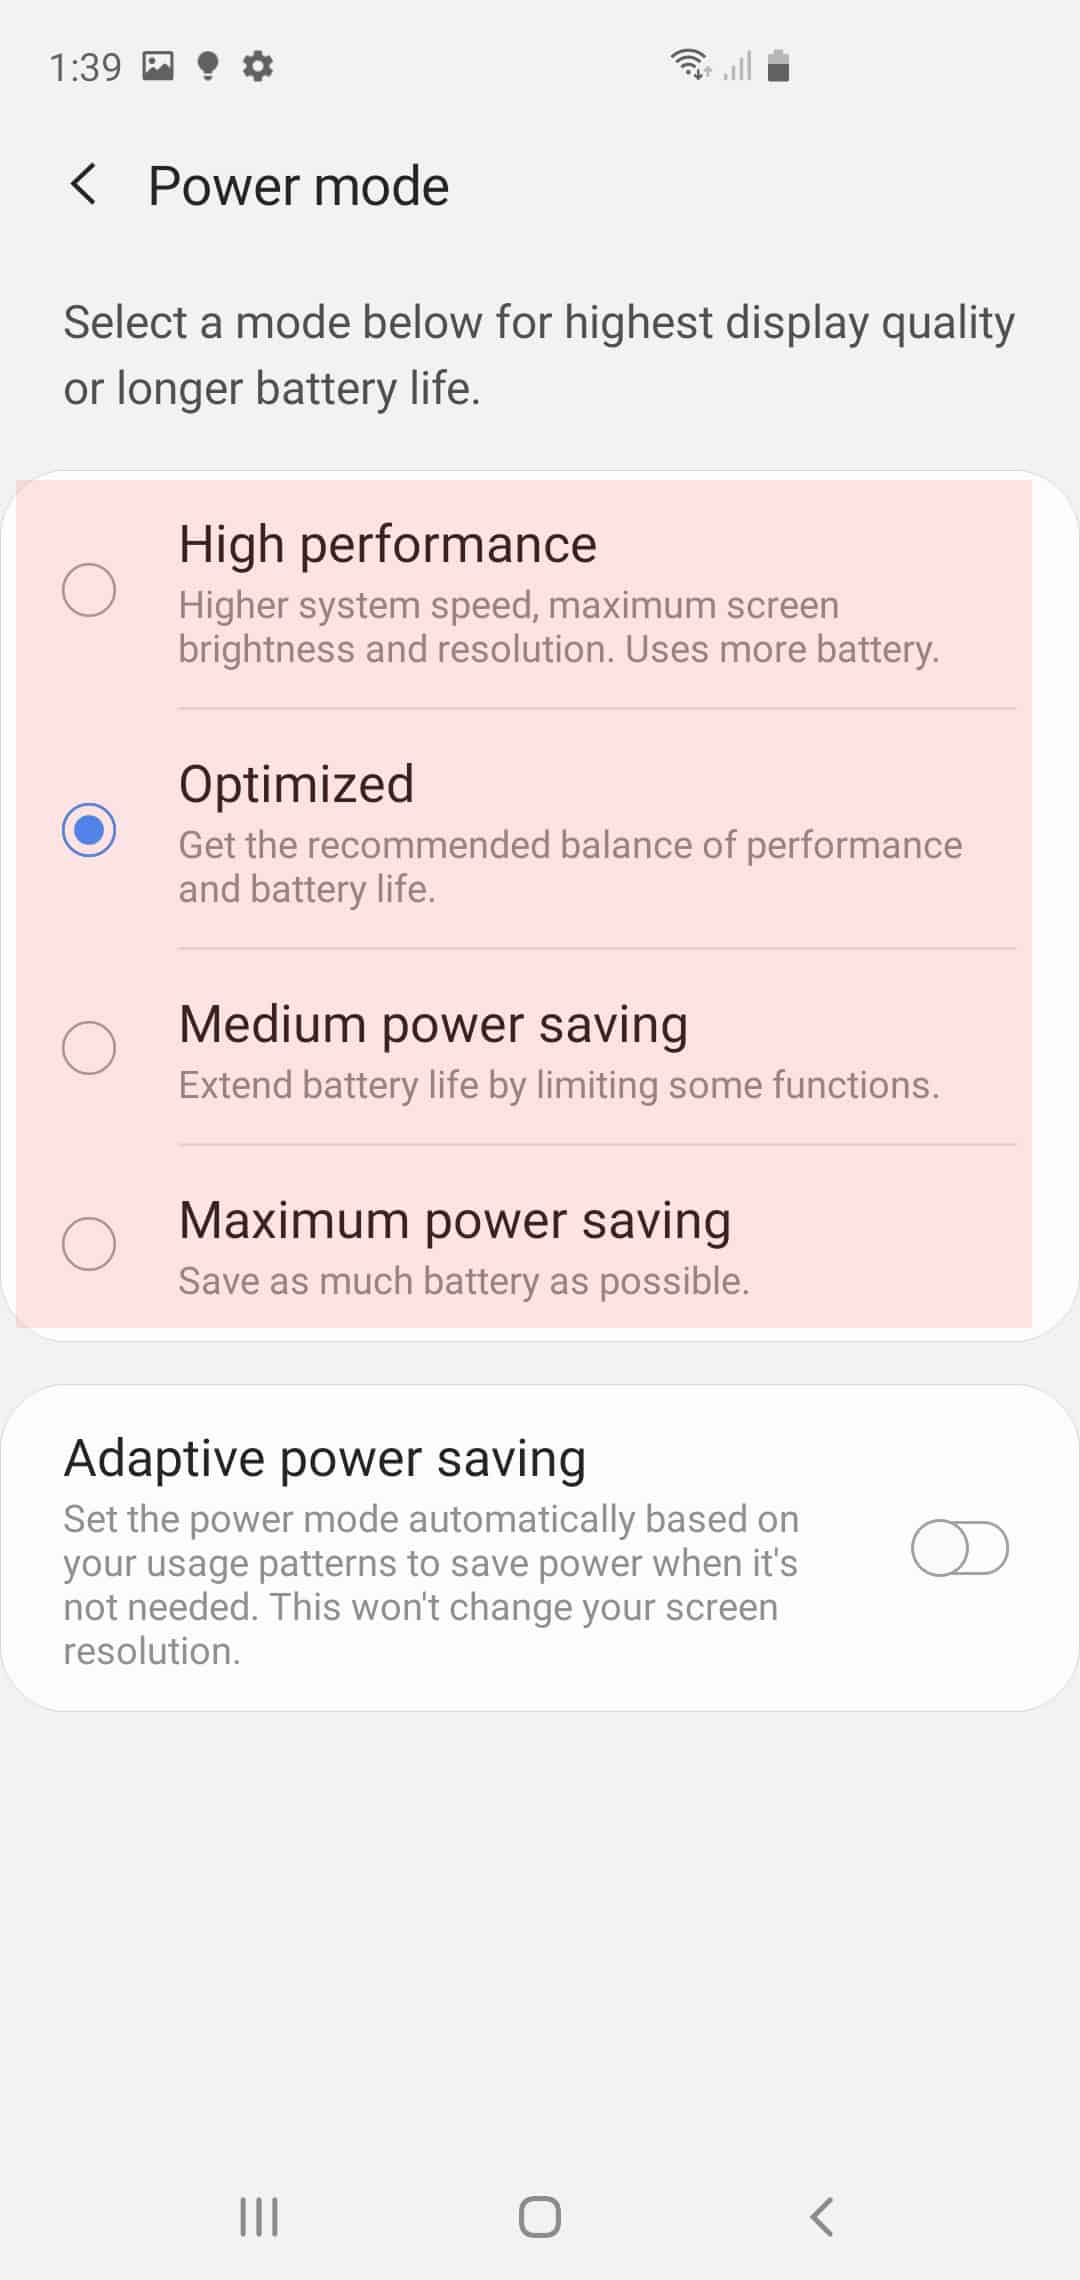 galaxy s20 power saving mode - power saving options